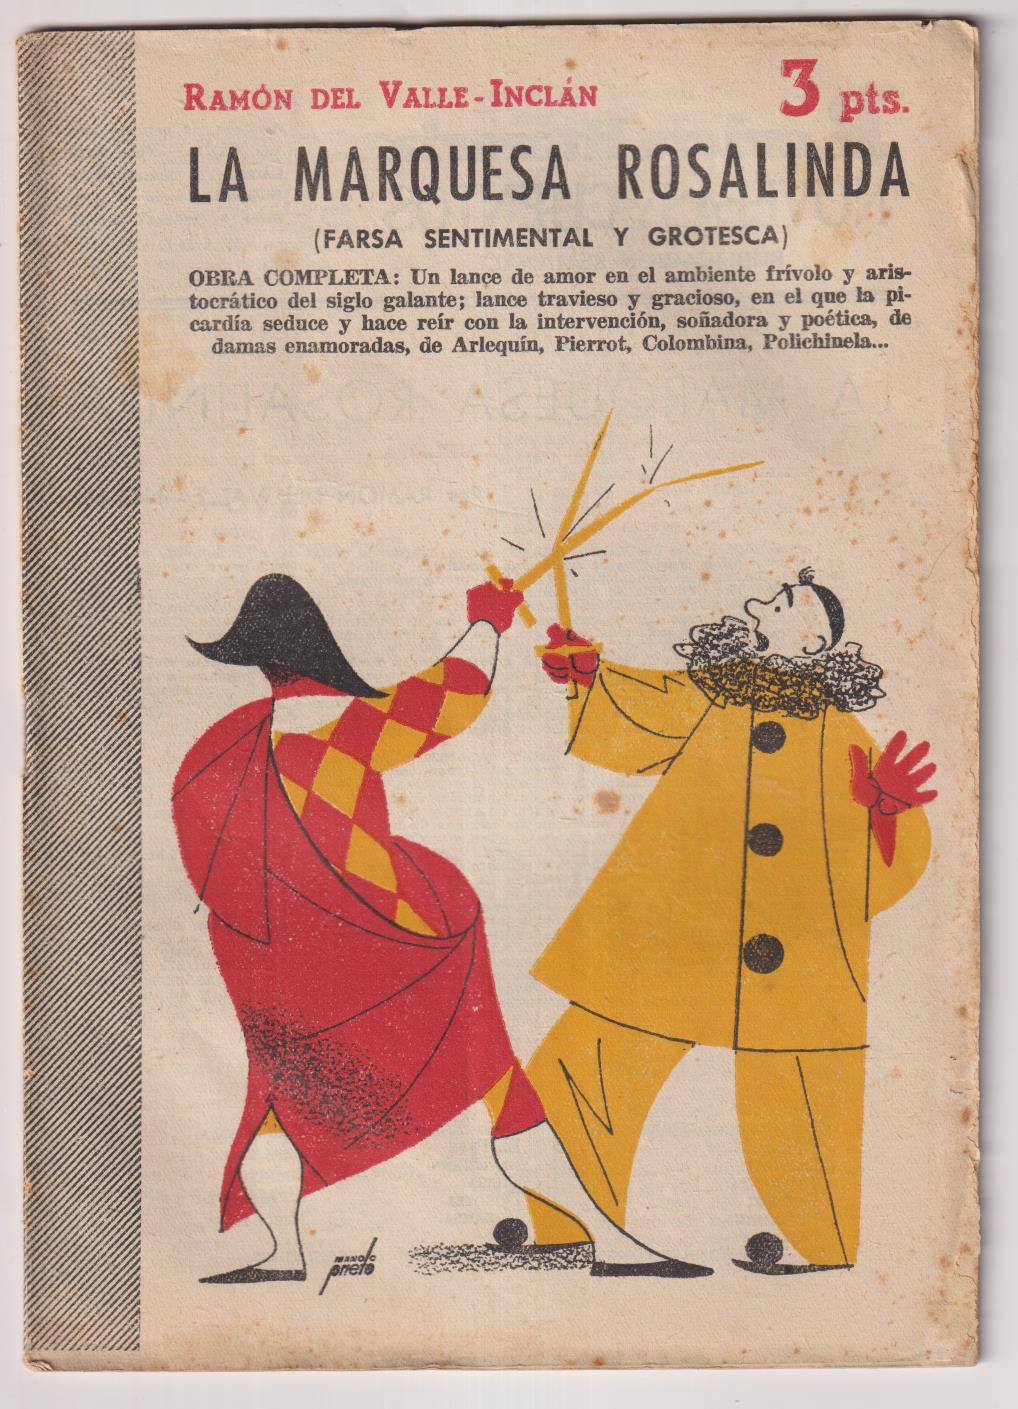 Revista Literaria Novelas y Cuentos nº 1275. R. Del Valle Inclán. La Marquesa Rosalinda, 1956